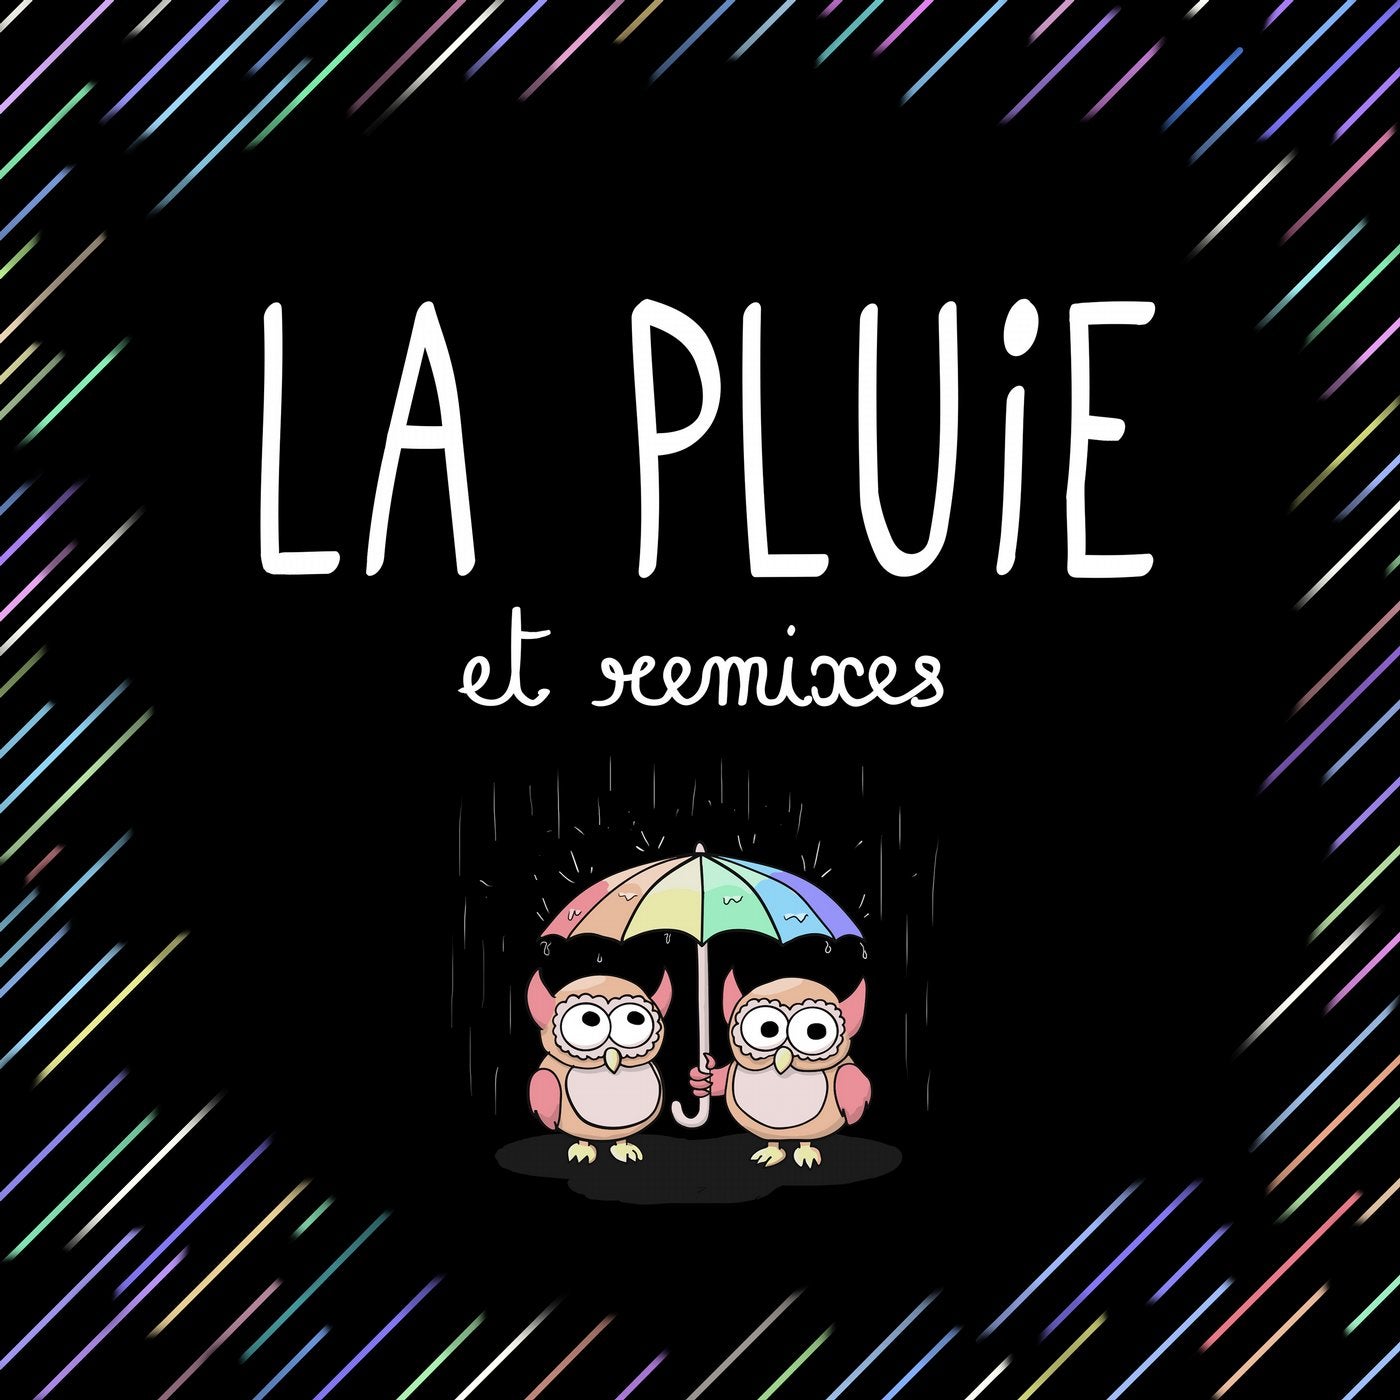 La pluie & Remixes